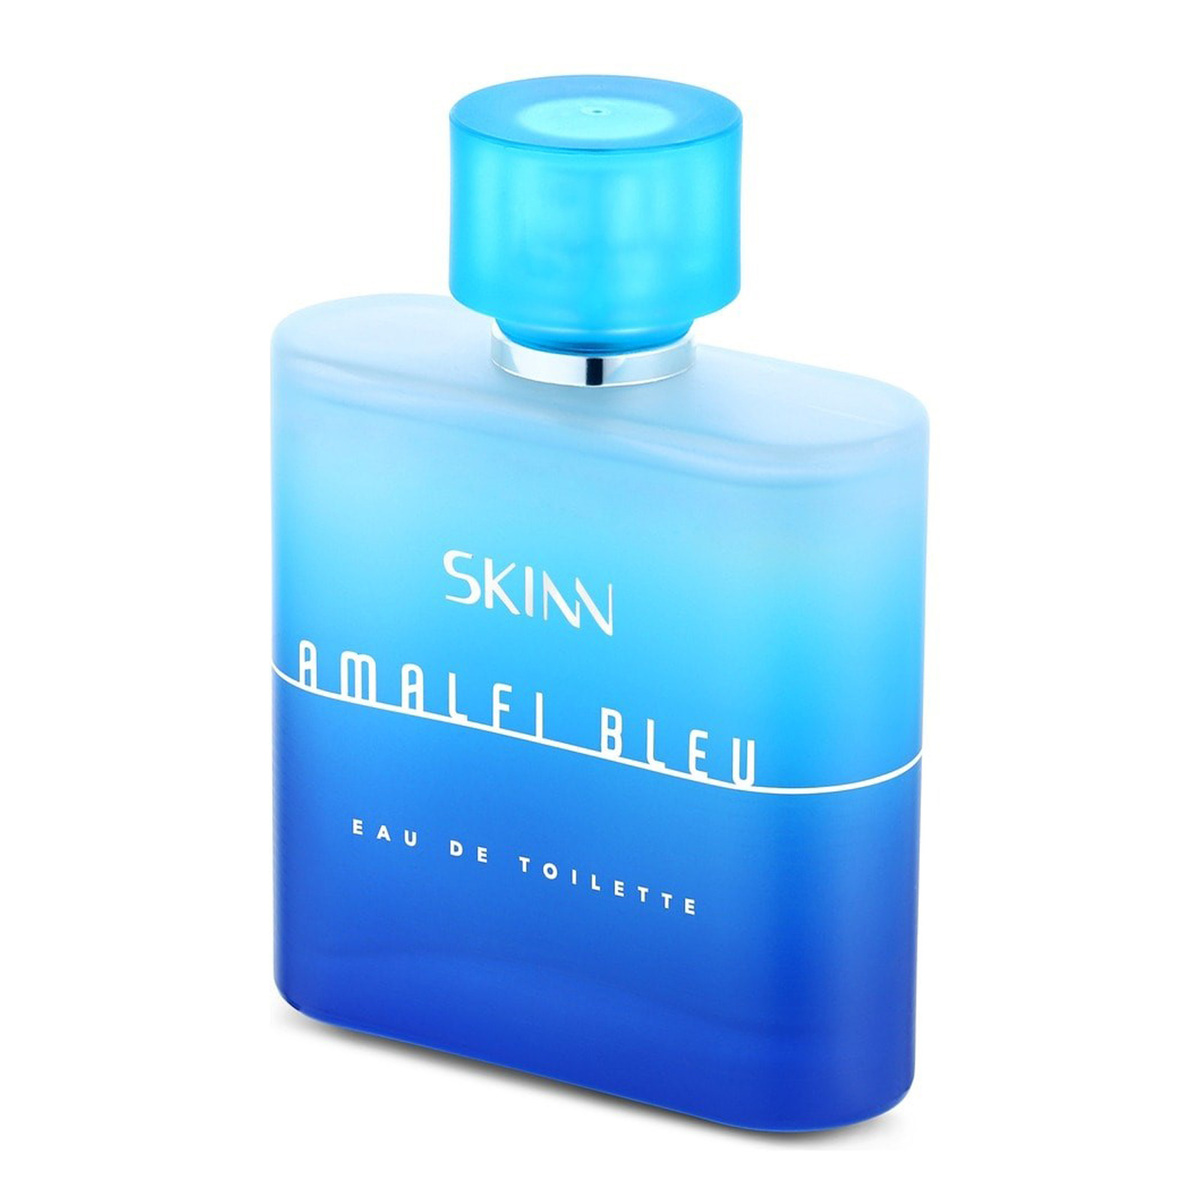 Skinn By Titan Amalfi Bleu Eau De Toilette for Men, 90 ml, NFFM14PK1